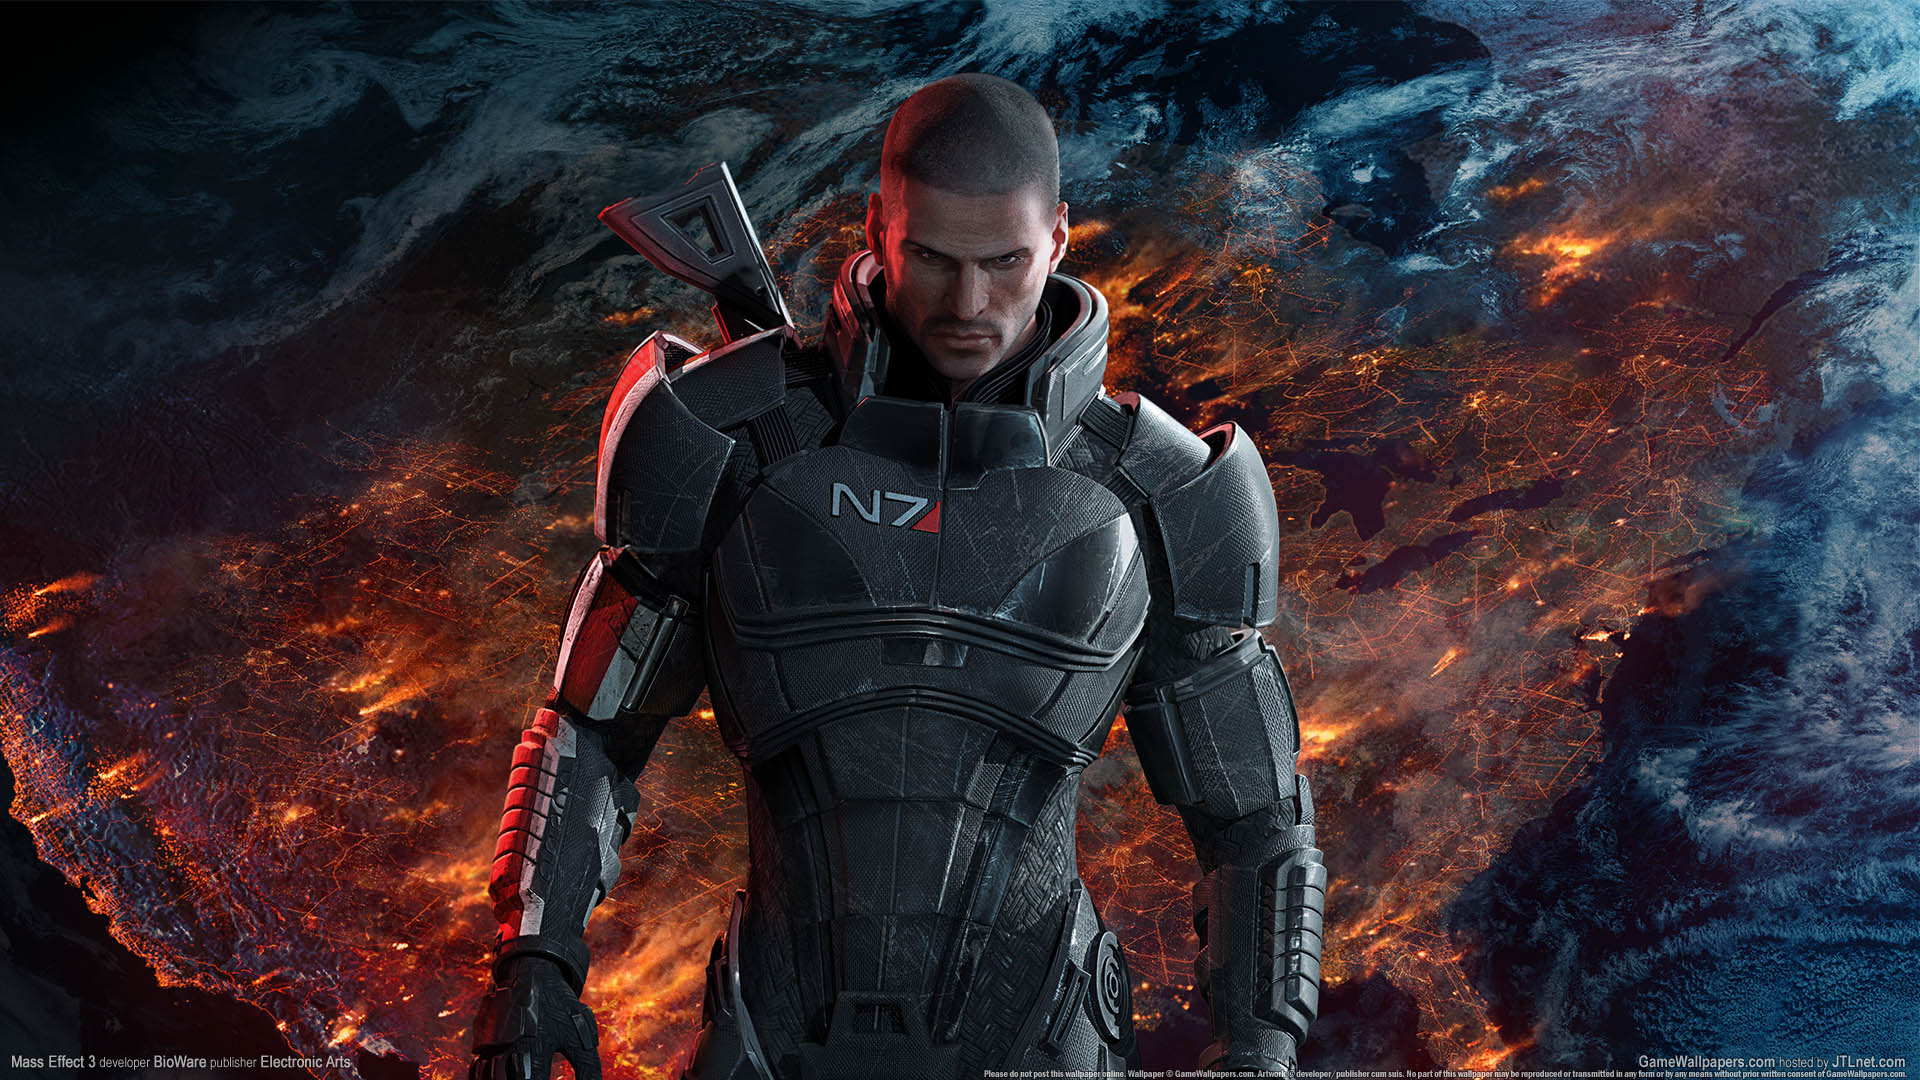 Mass Effect 3 fond d'cran 01 1920x1080